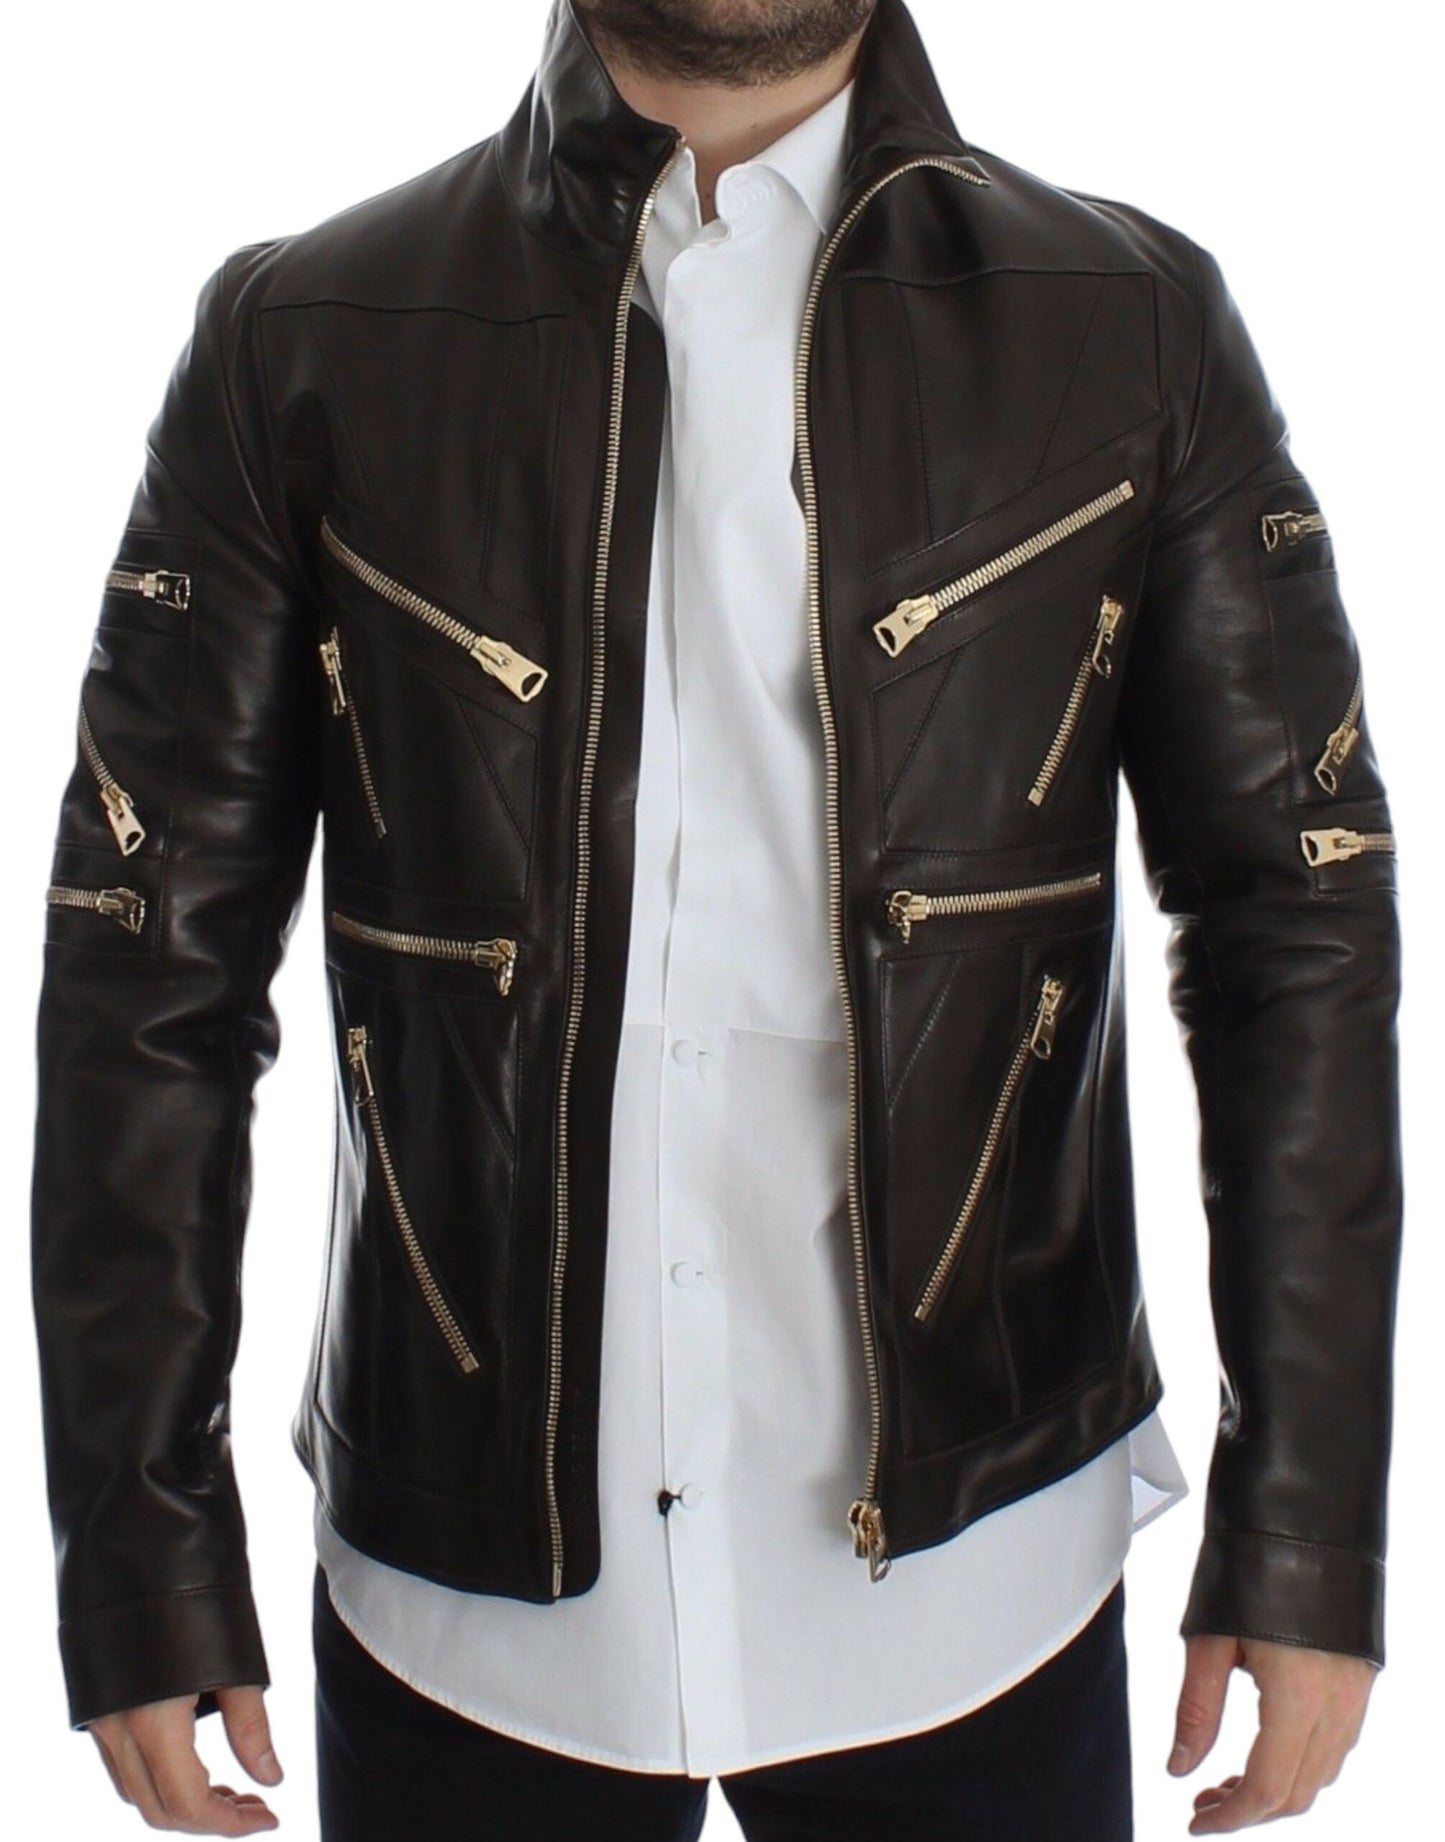 Elegant Brown Gold-Detailed Leather Jacket